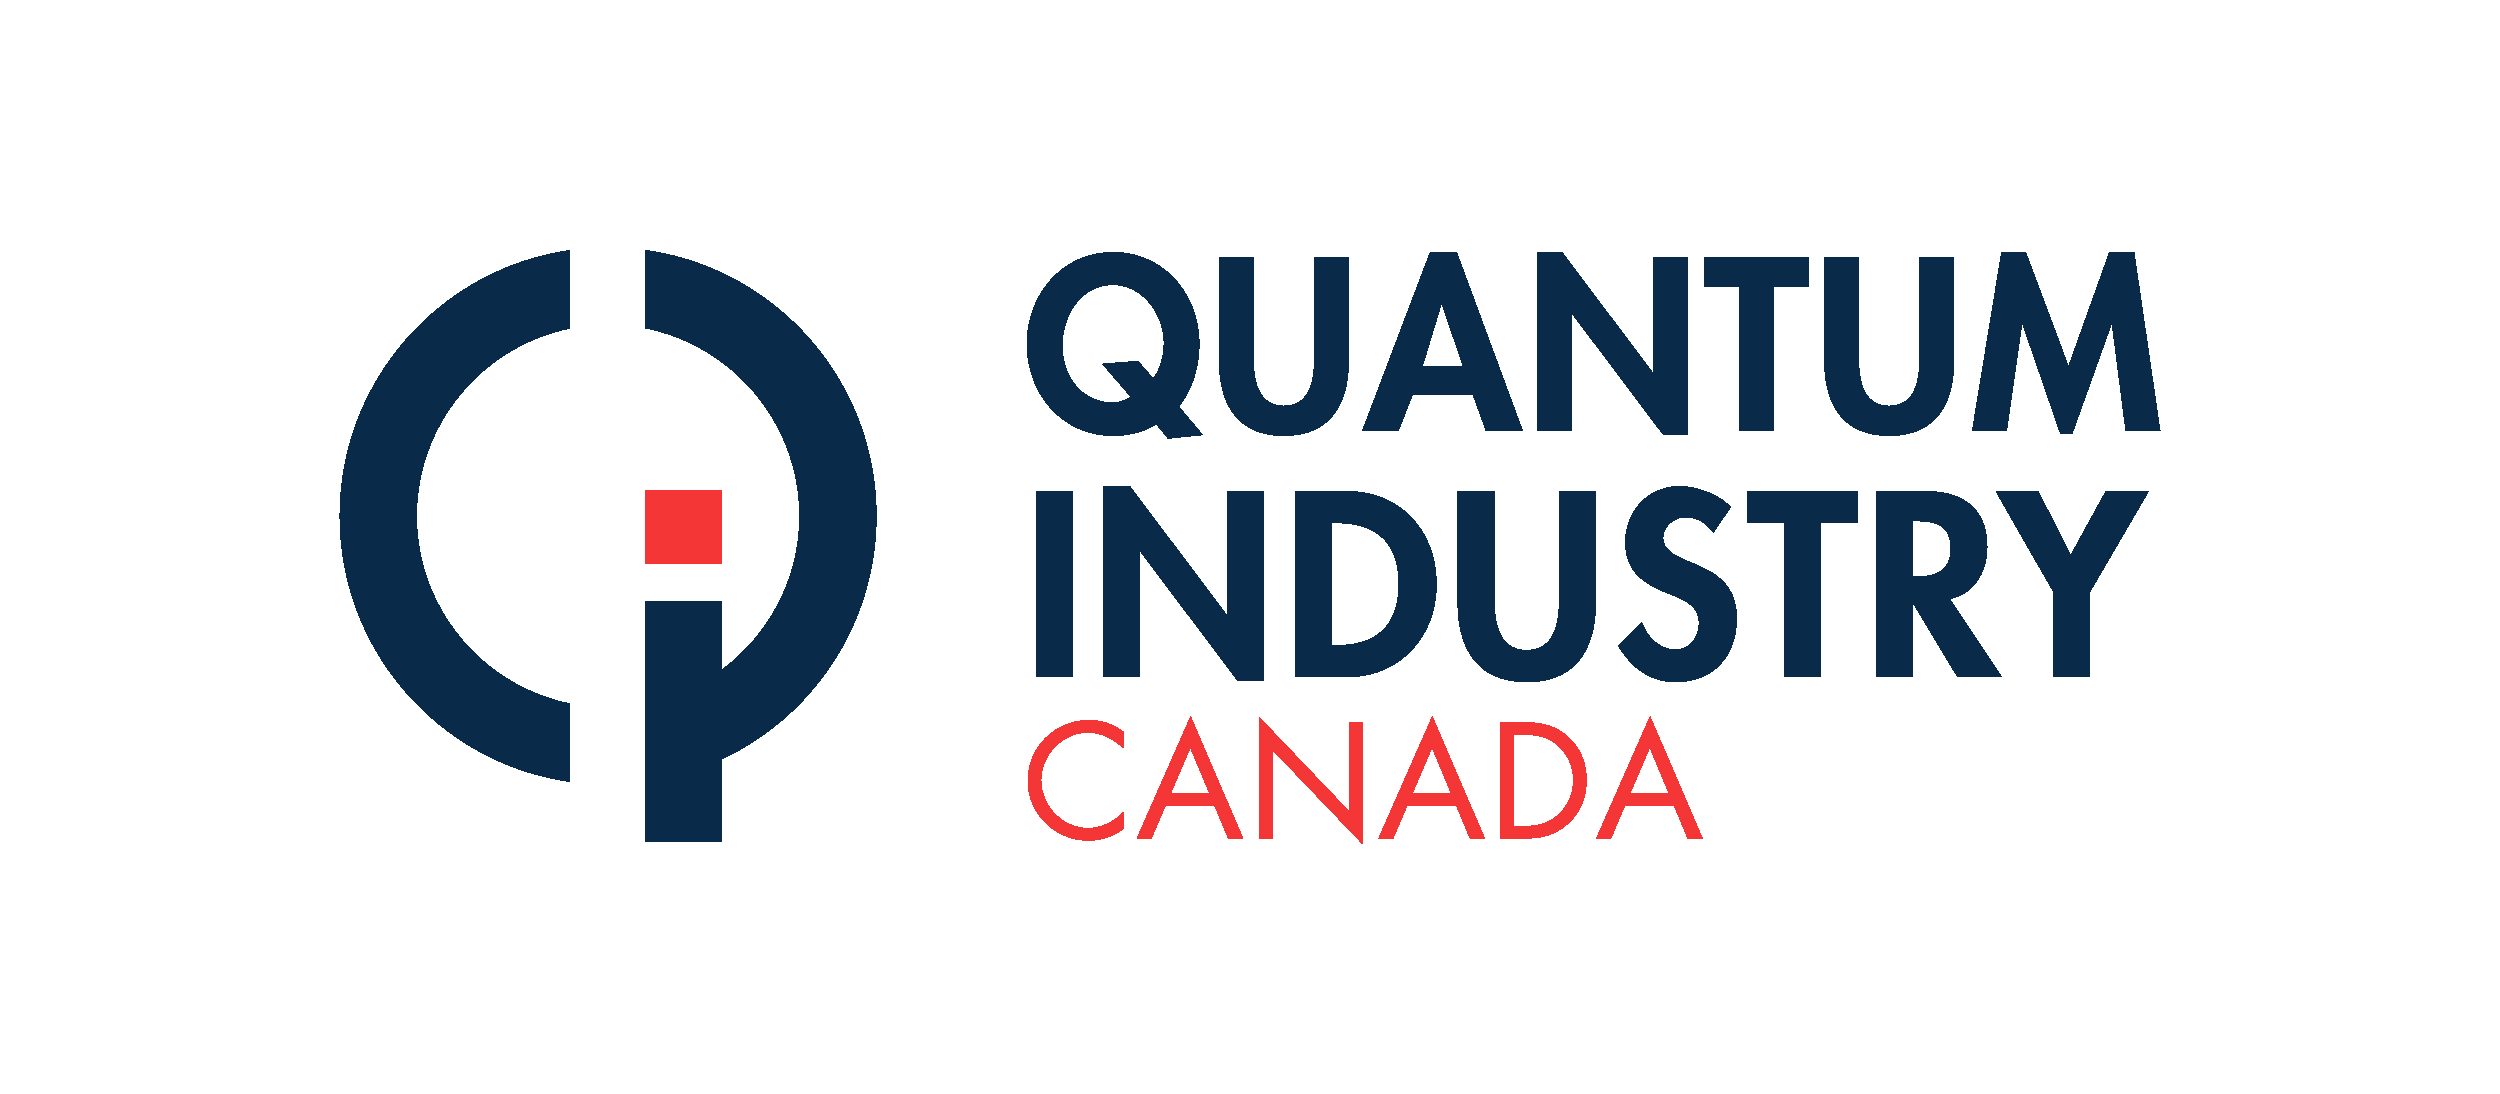 Quantum Industry Canada / 